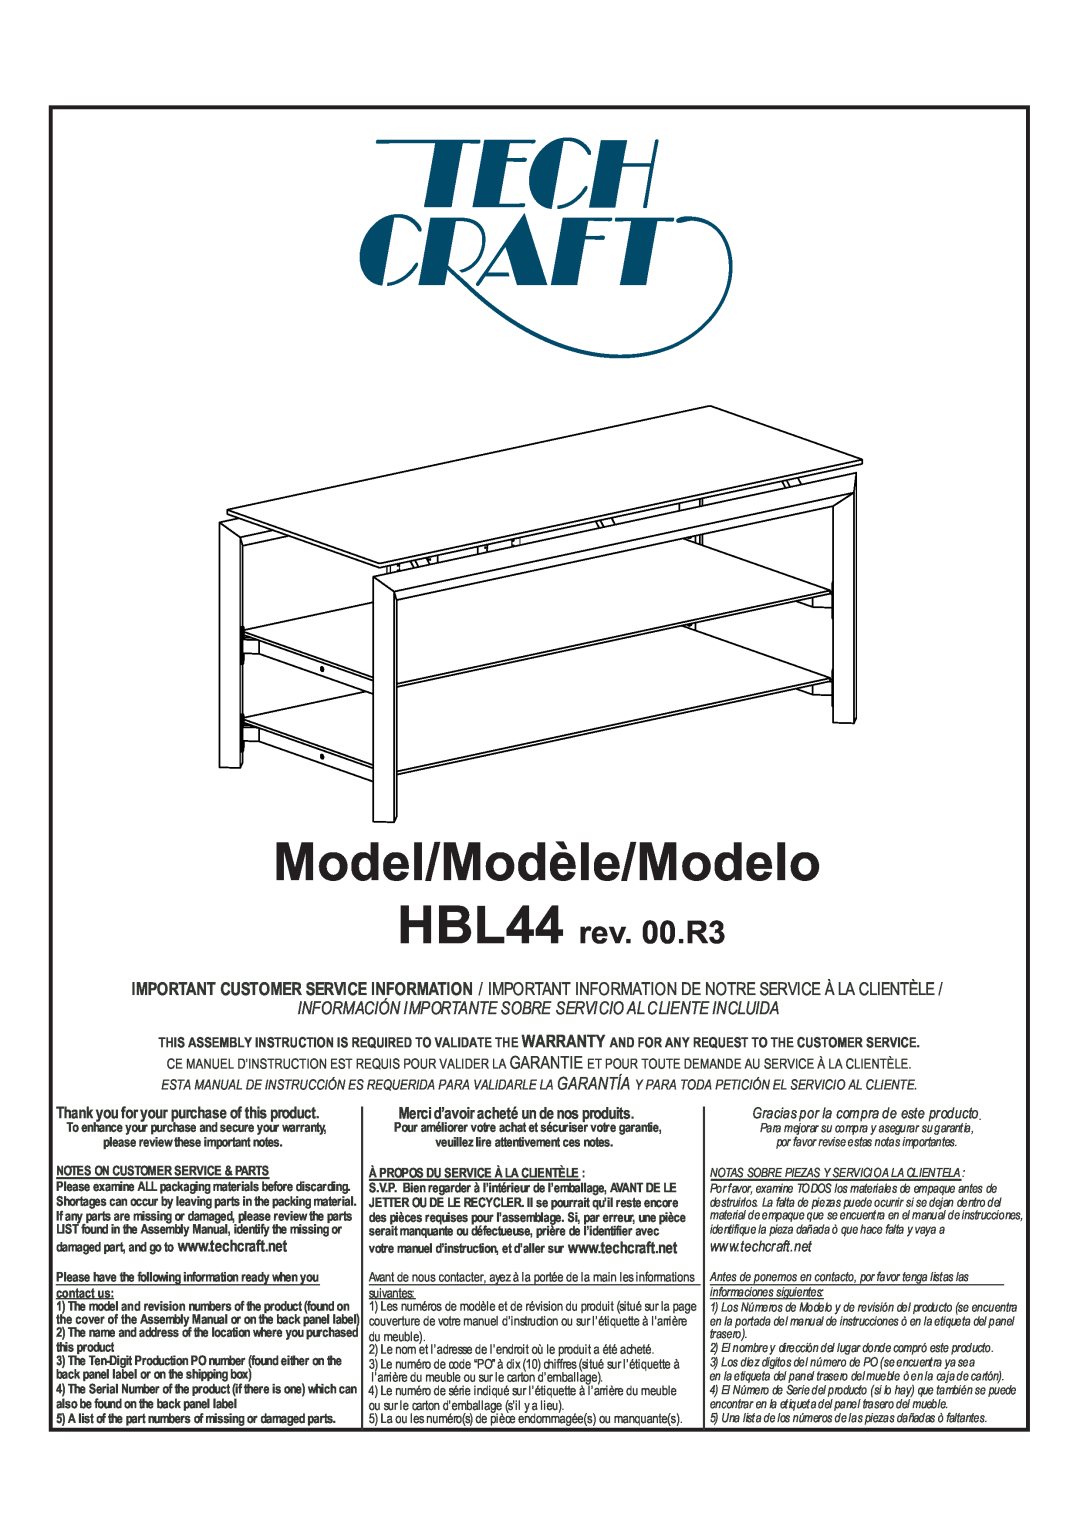 Tech Craft warranty Model/Modèle/Modelo, HBL44 rev. 00.R3, Información Importante Sobre Servicio Al Cliente Incluida 